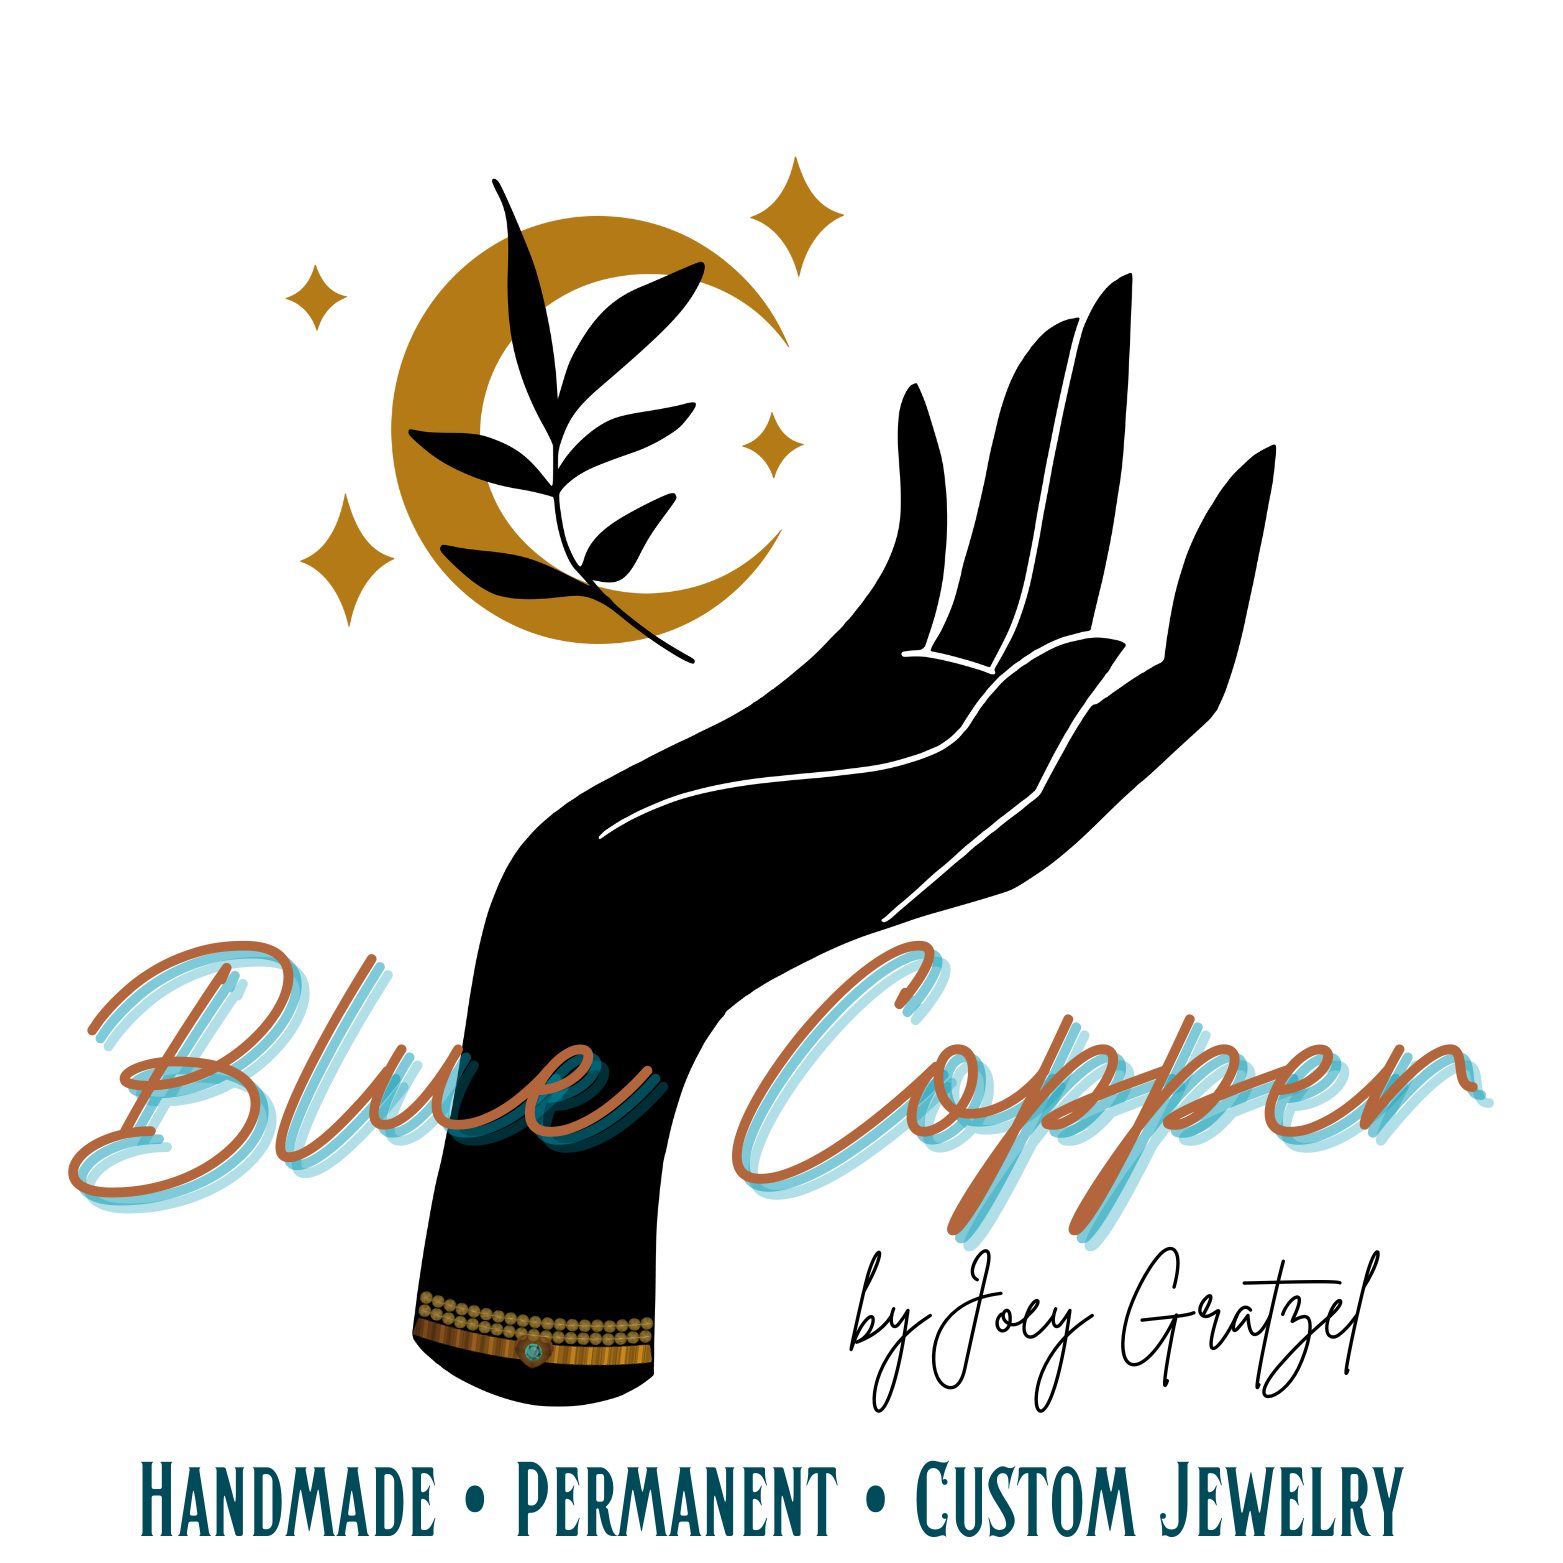 Blue Copper Jewlery